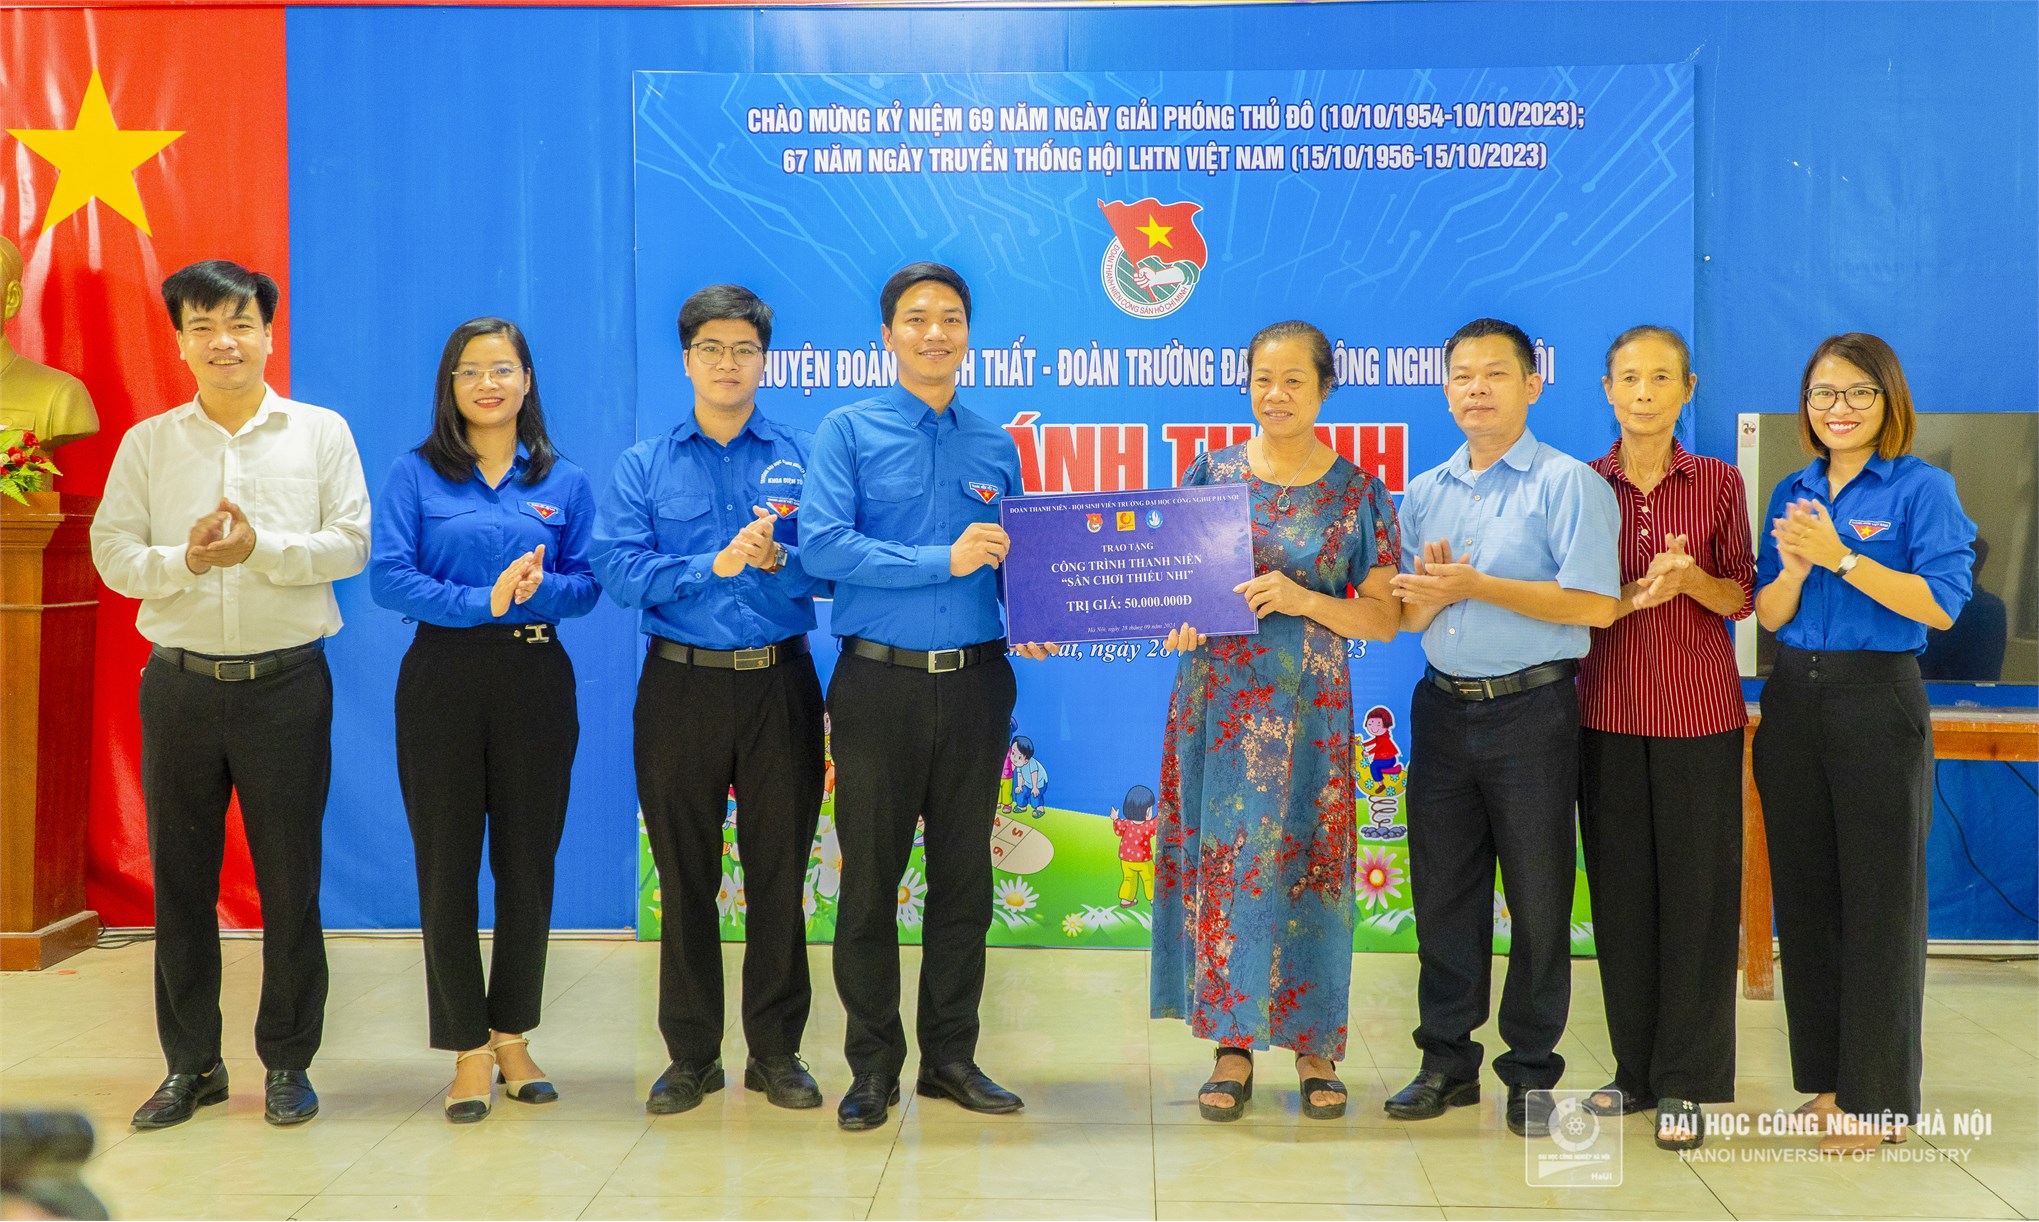 Tuổi trẻ Đại học Công nghiệp Hà Nội khánh thành sân chơi thiếu nhi tại xã Chàng Sơn, huyện Thạch Thất